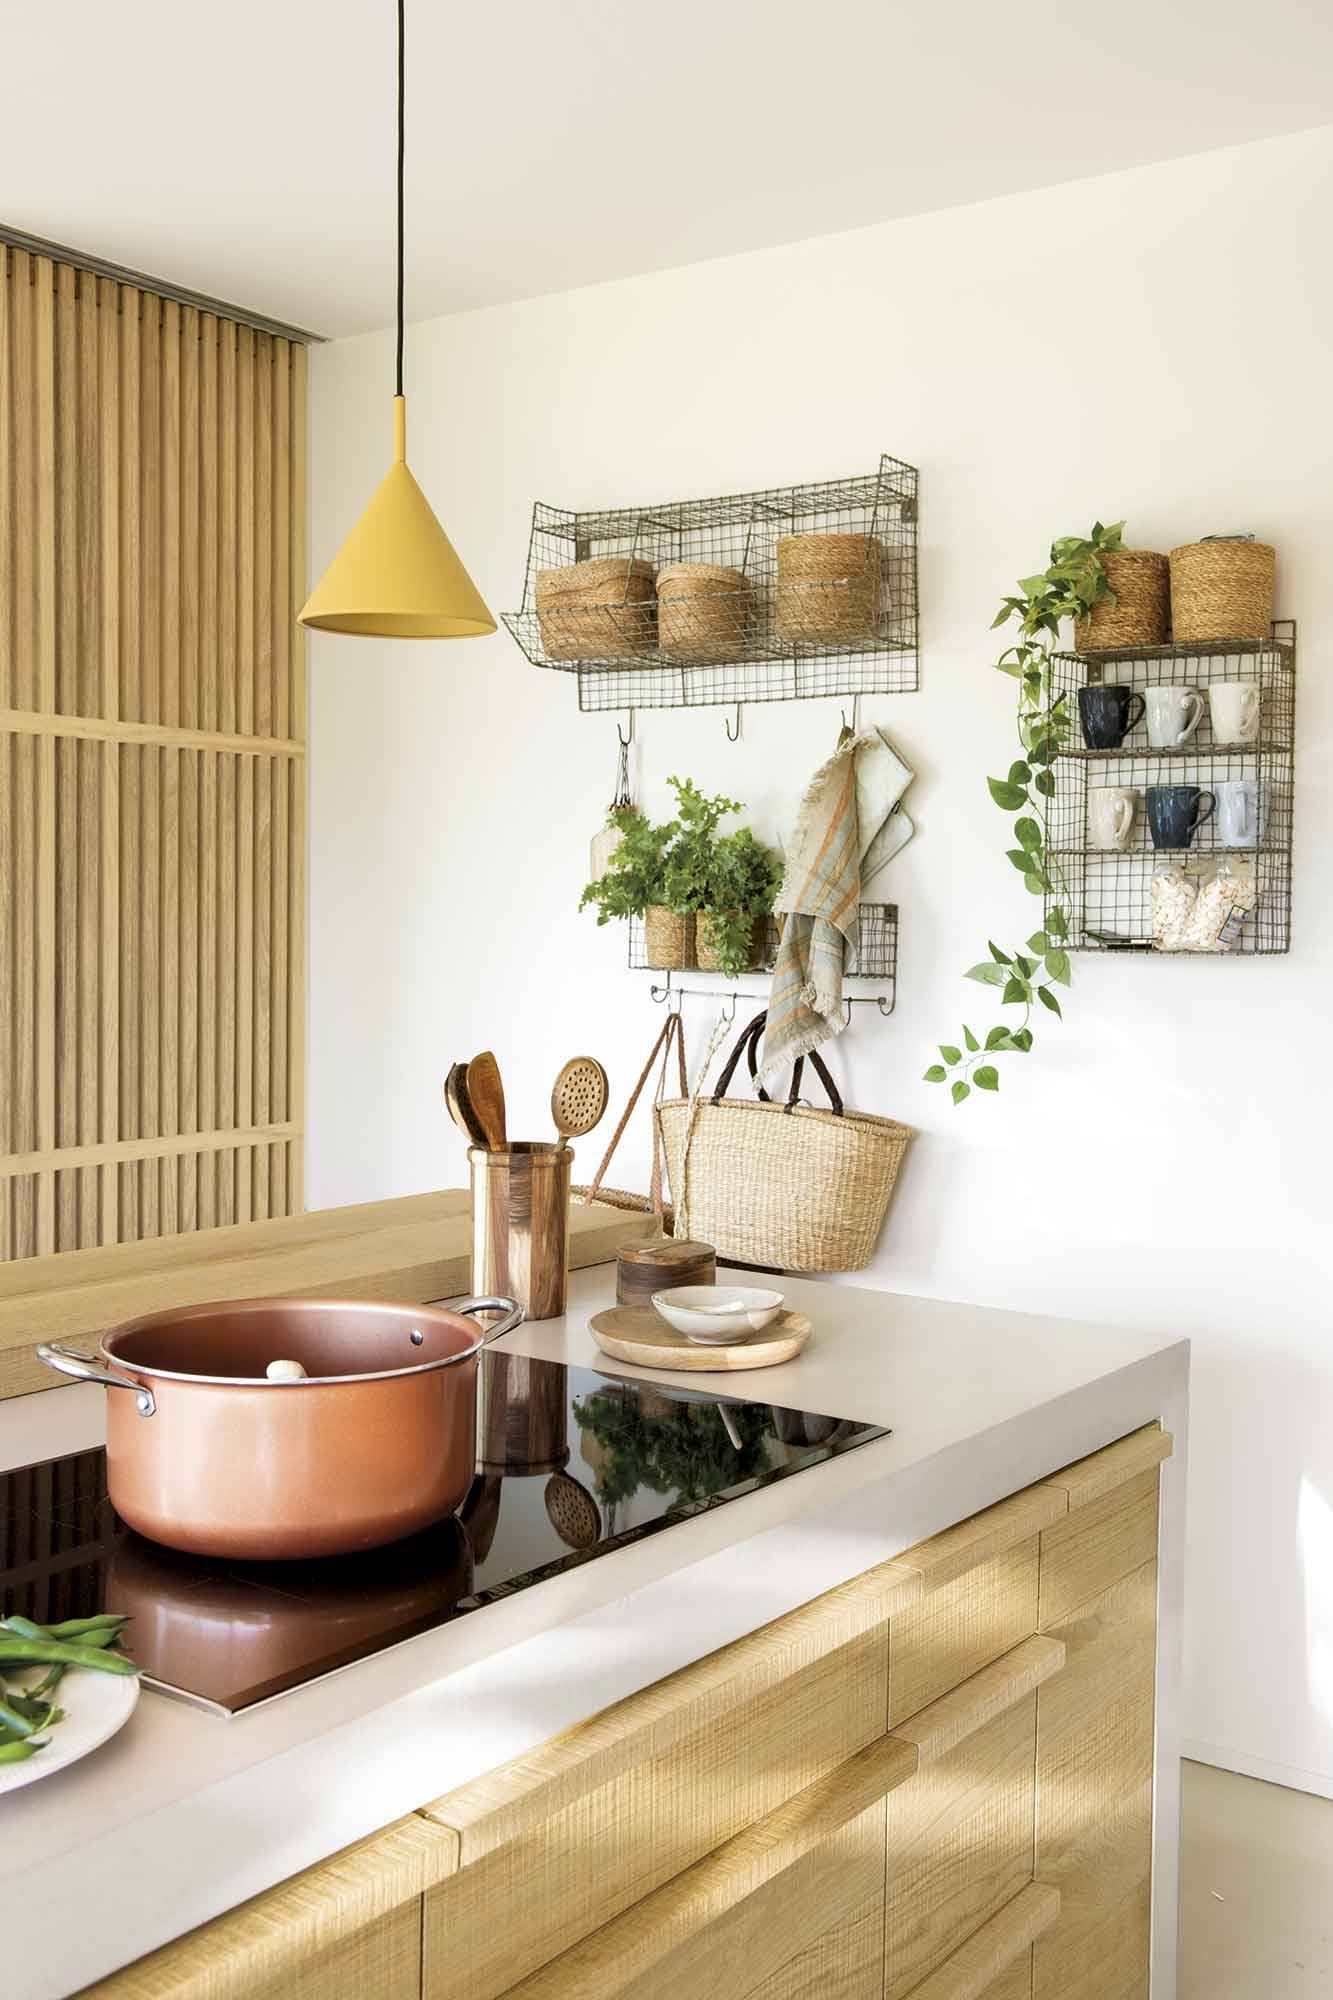 Detalle de la cocina con estantes metálicos, cestos y plantas. 